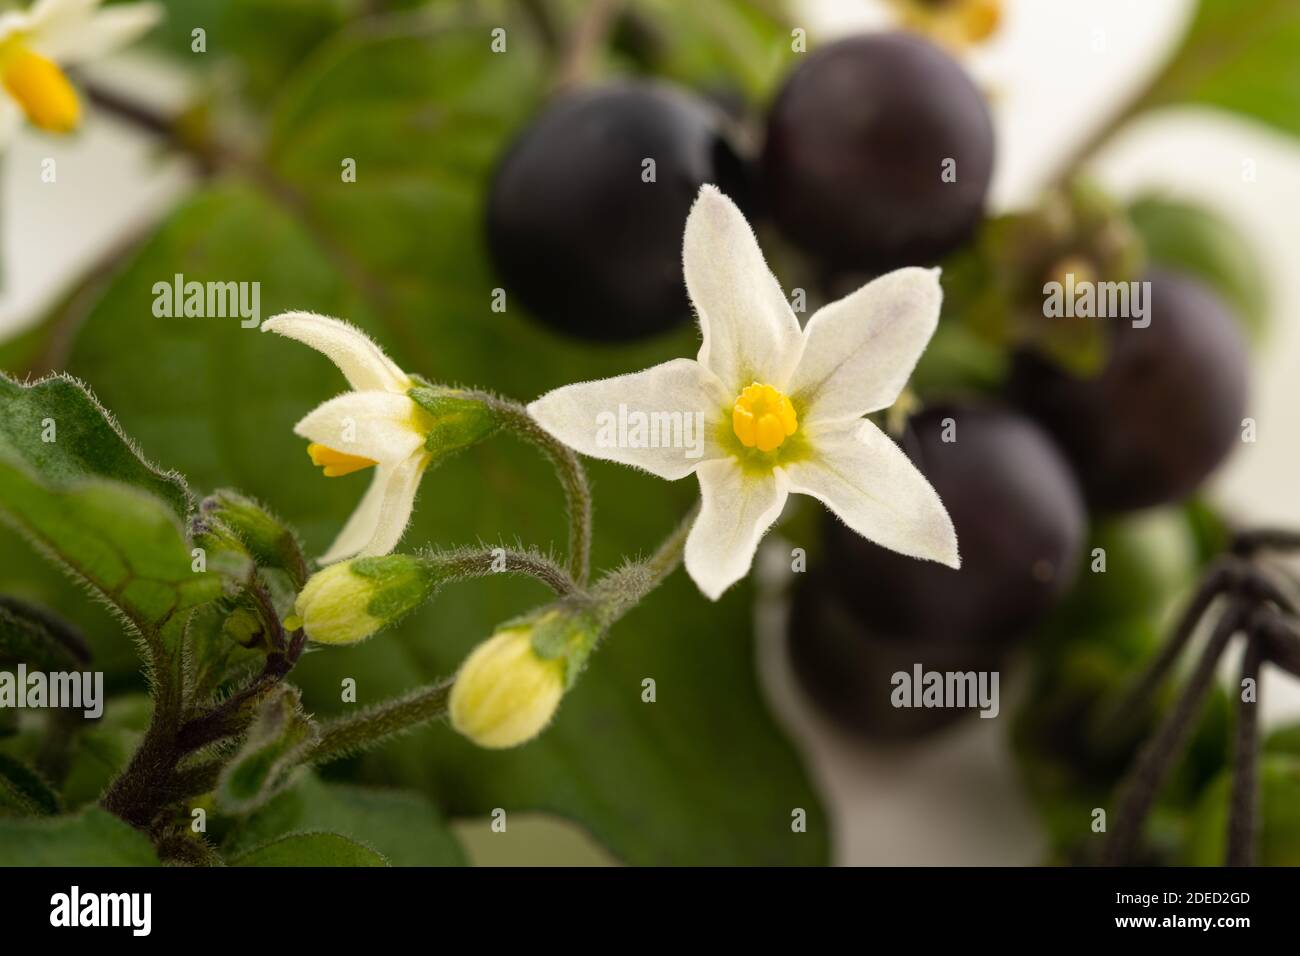 Black nightshade plant isolated on white background Stock Photo